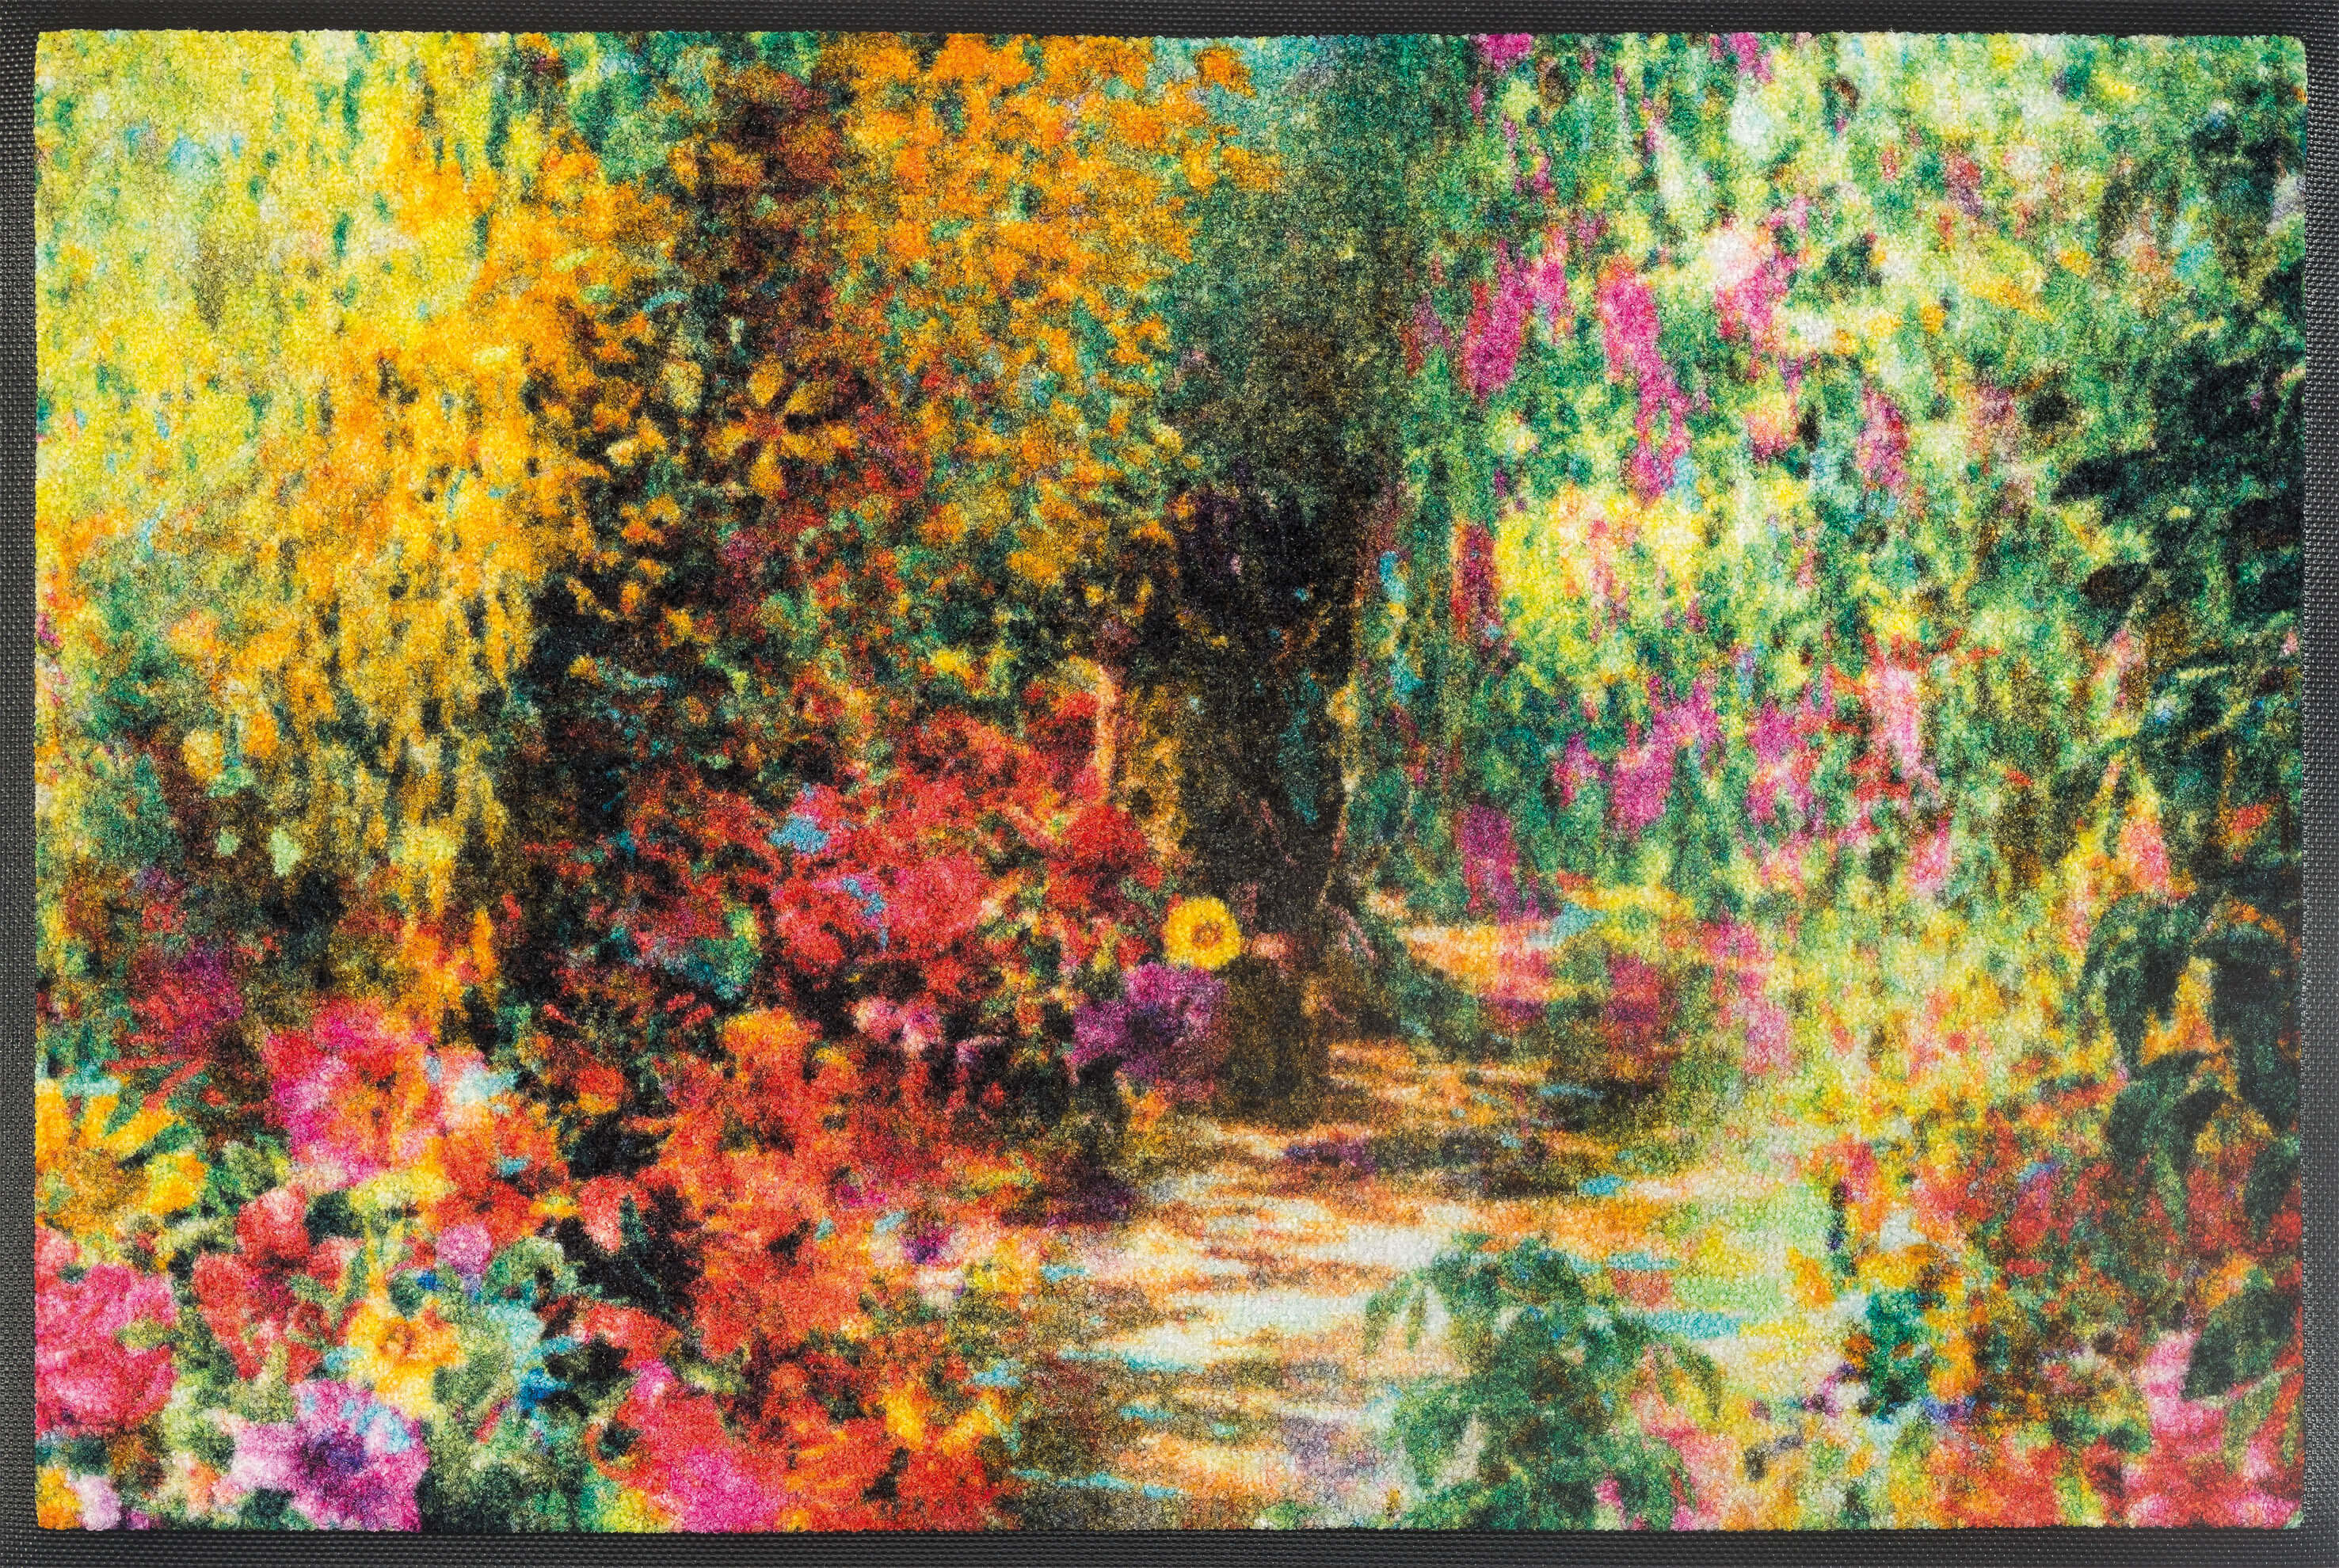 Fußmatte Primavera, Wash & Dry Designmatte, mehrfarbig, 050 x 075 cm, Draufsicht